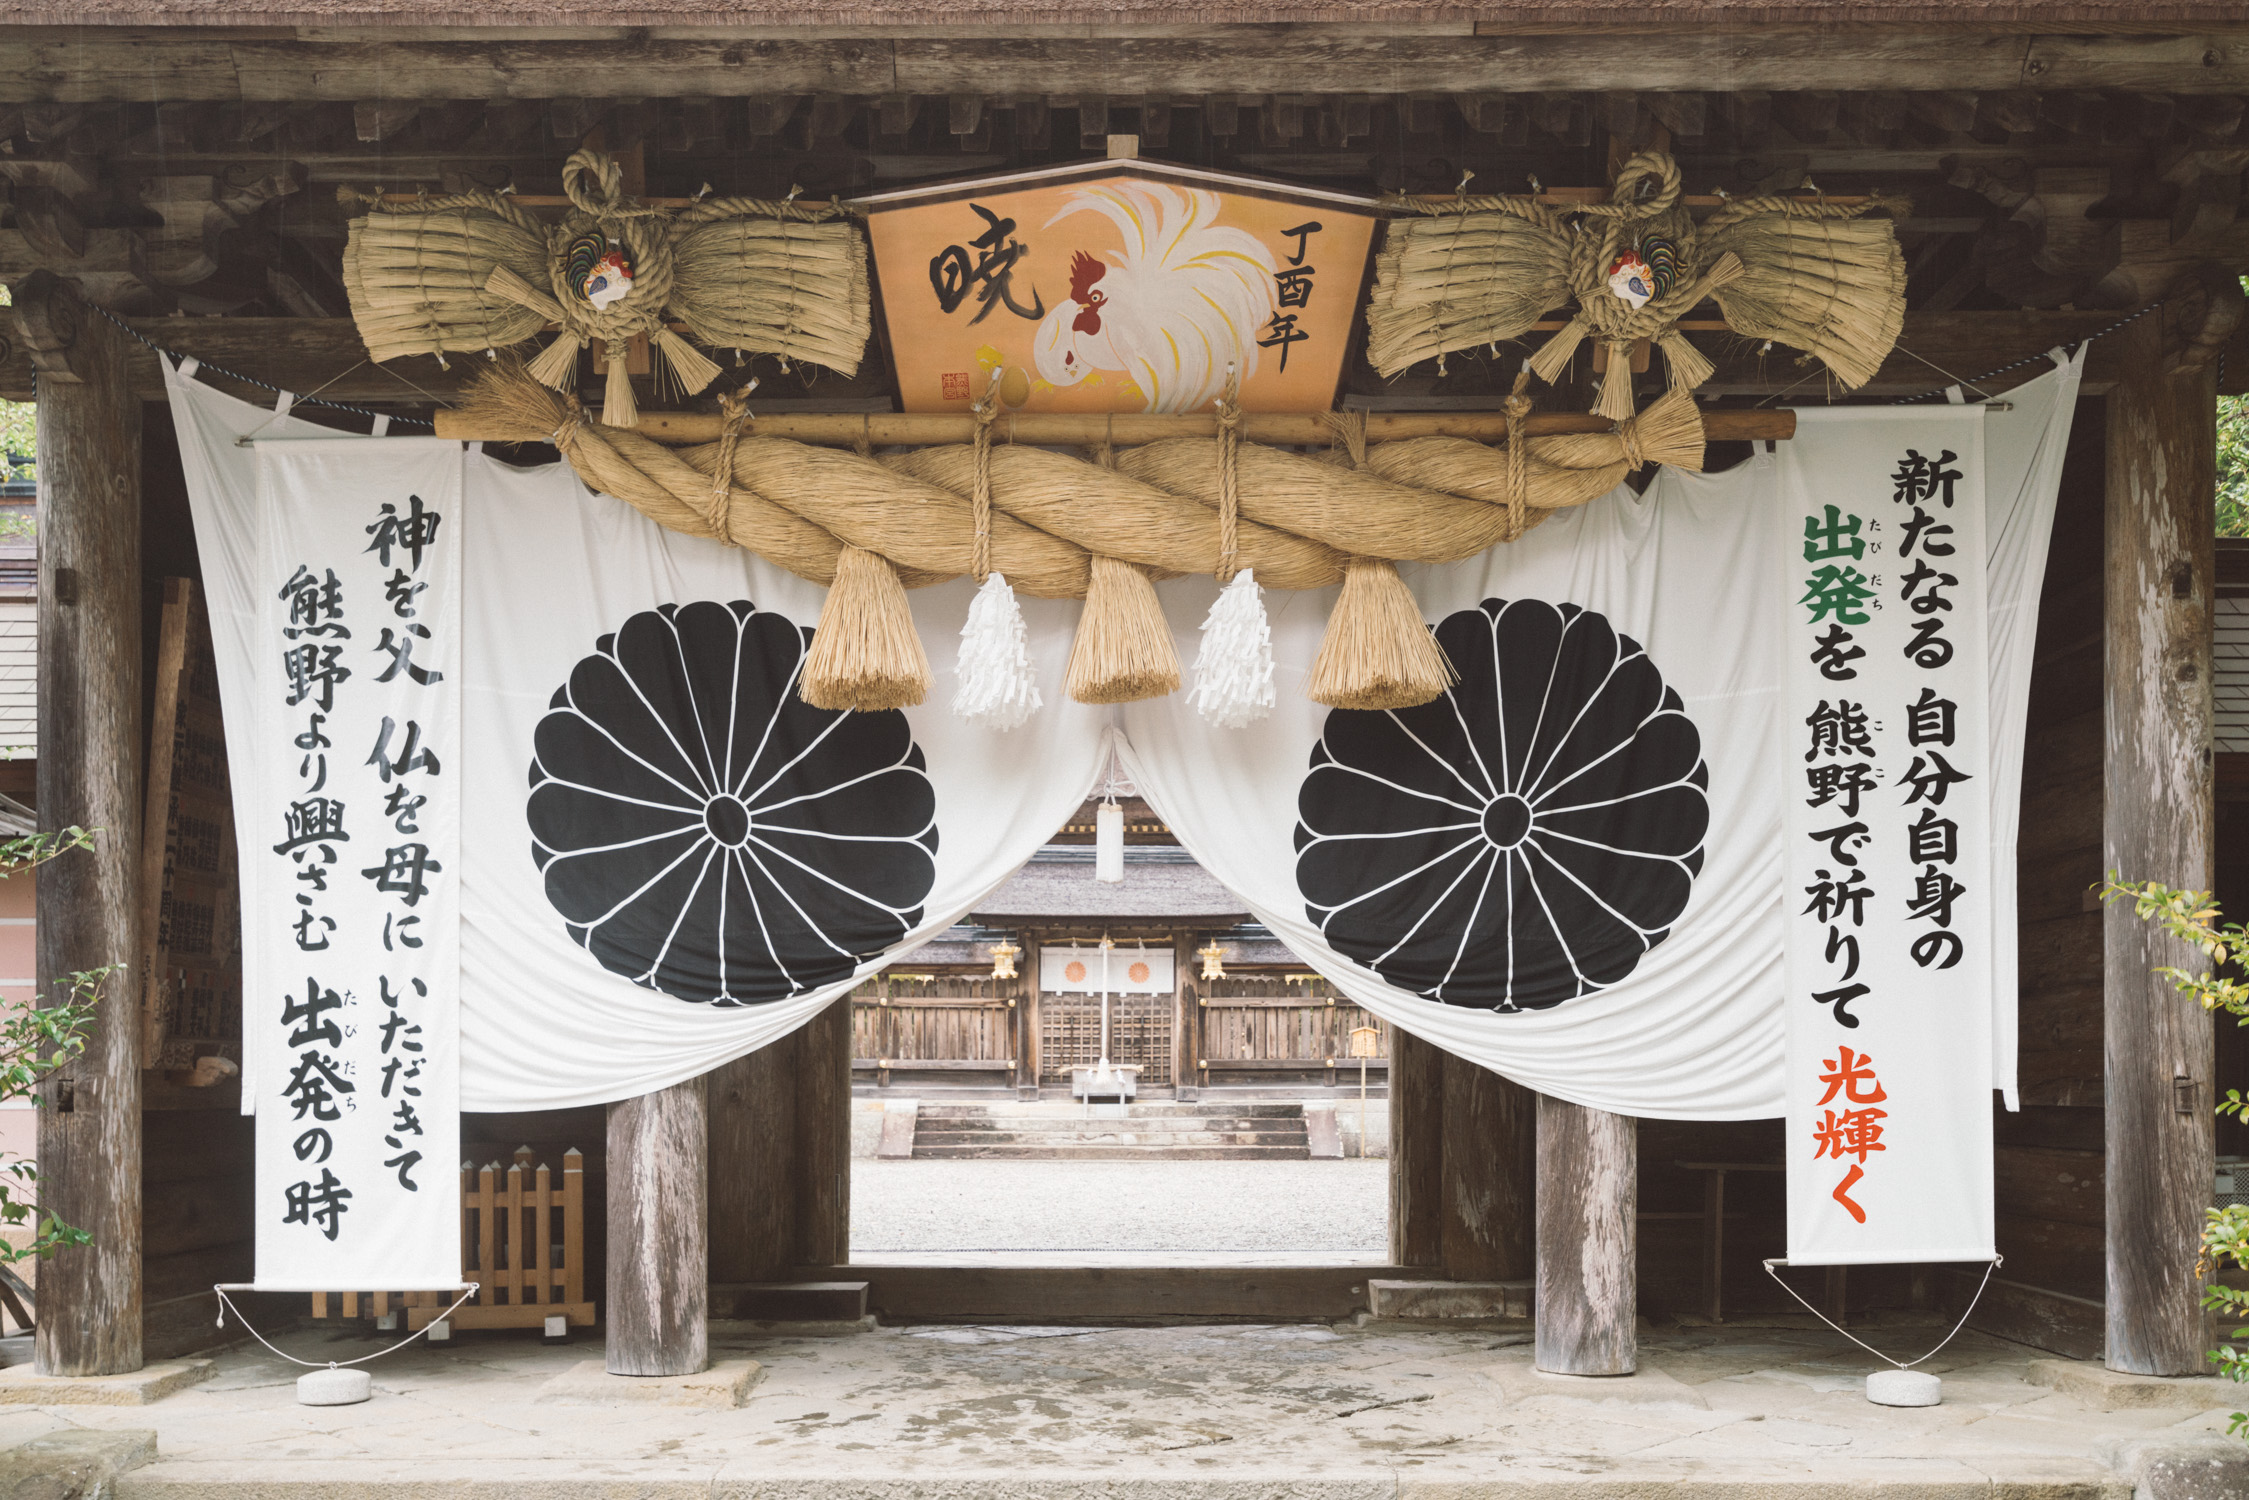 Shrine entrance [David Tan]